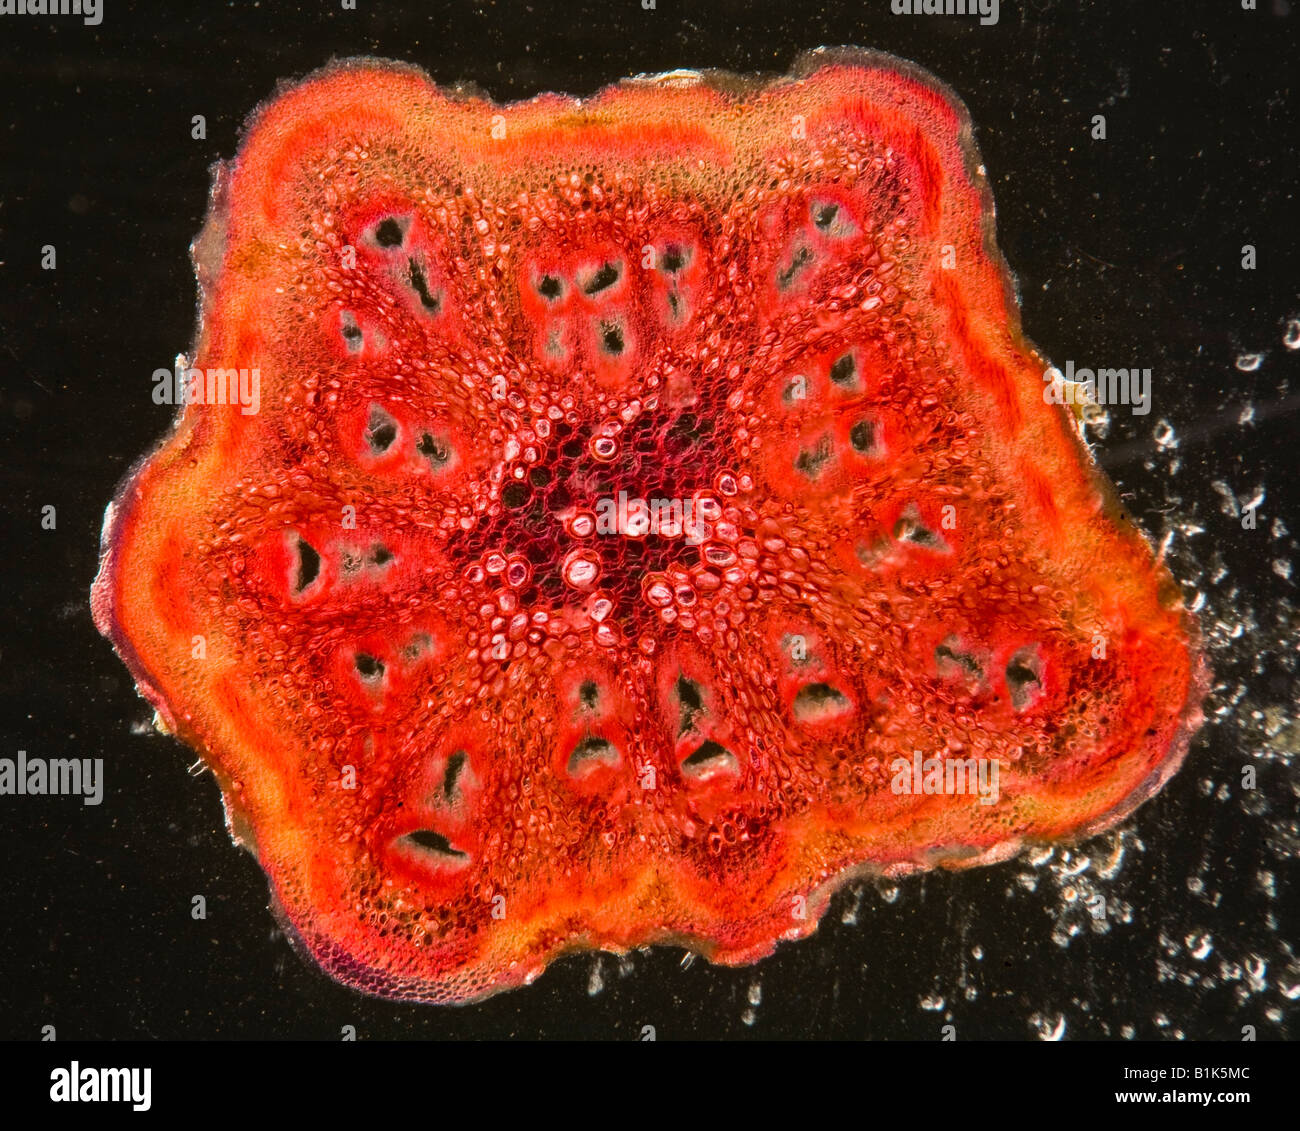 Darkfield photomicrographie de Langenaria sp. électrique gourd pétiole article Banque D'Images